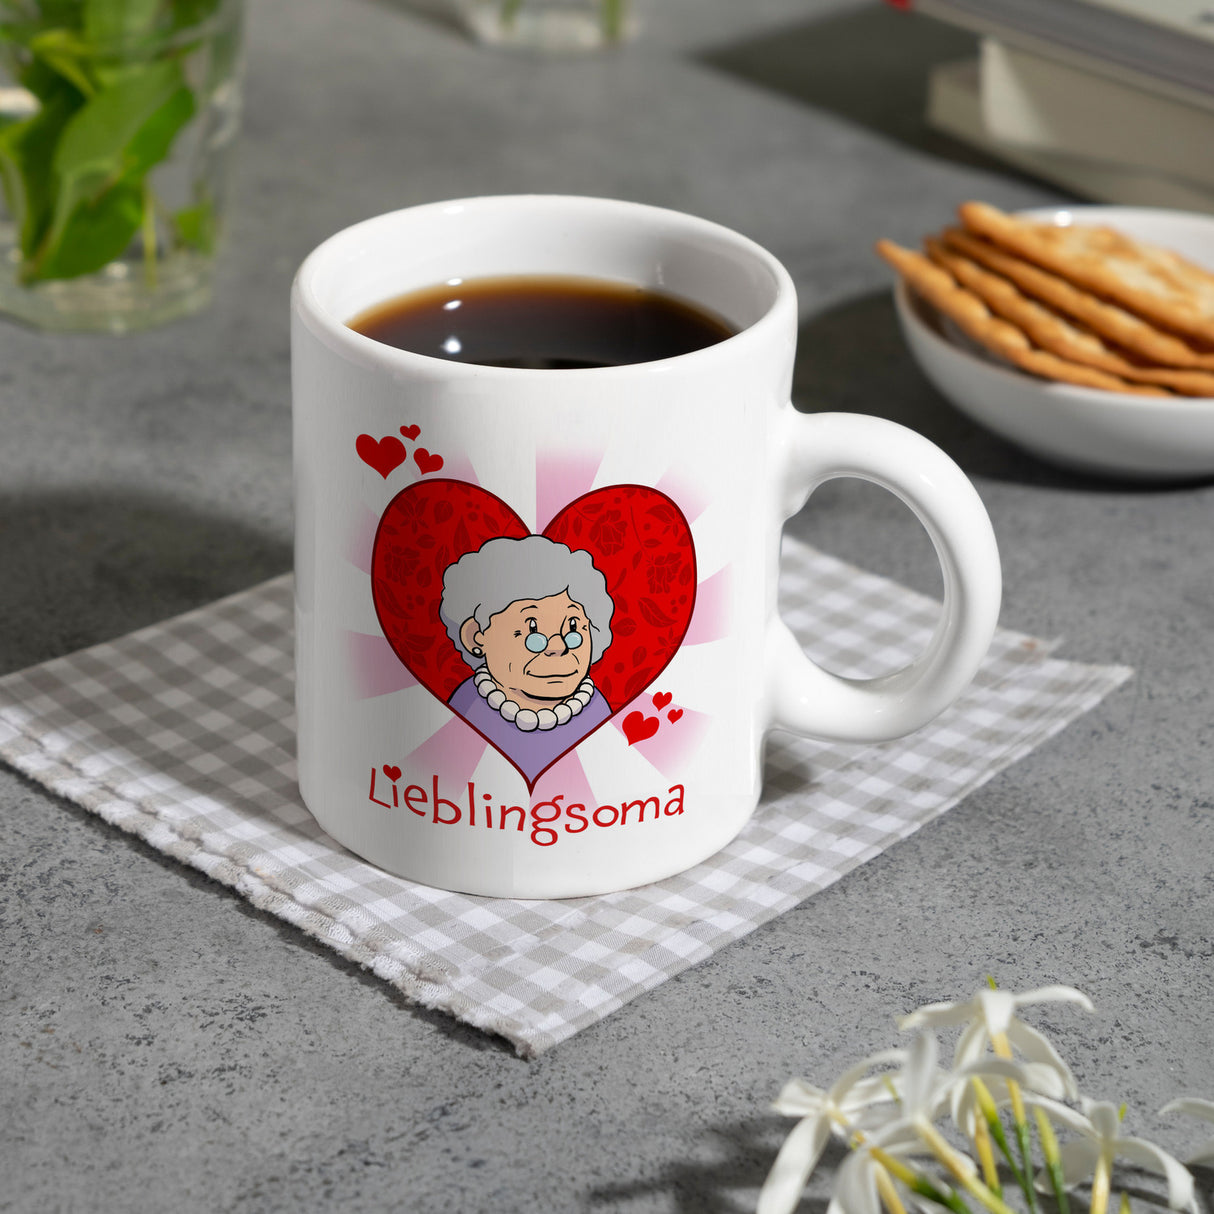 Lieblingsoma Kaffeebecher mit Oma im Herz